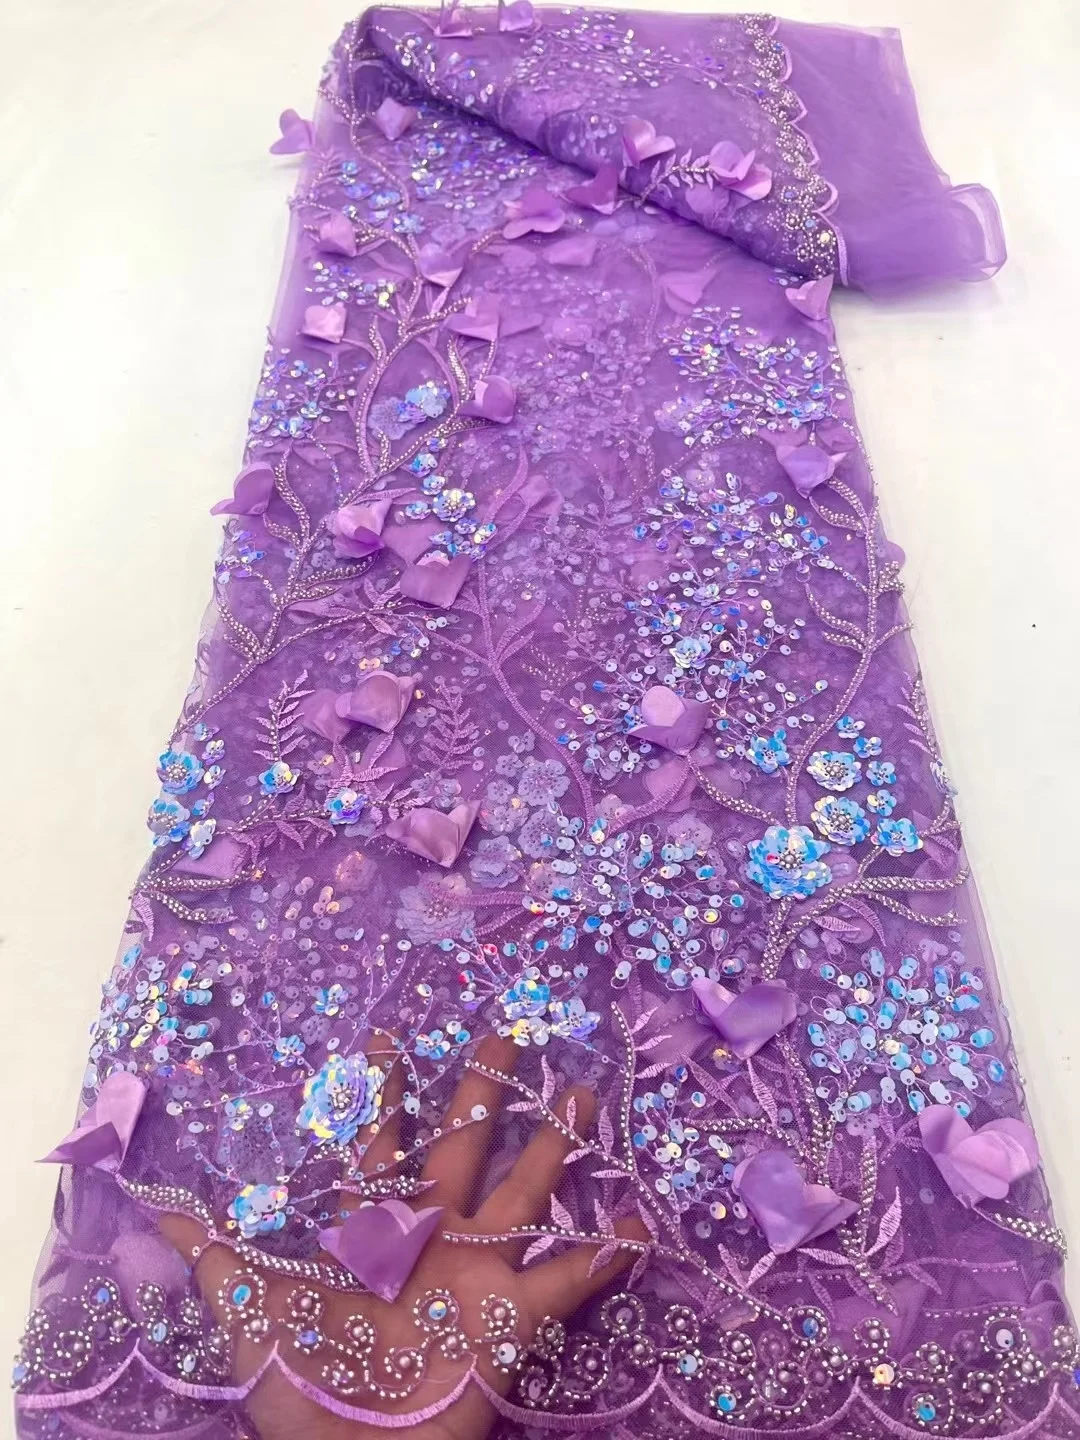 3D Renda Bordada Tecido Vestido de Festa de Casamento as Mulheres Nigéria Applique Malha Frisado Africana de Tule de Alta Qualidade de Cetim francês Net